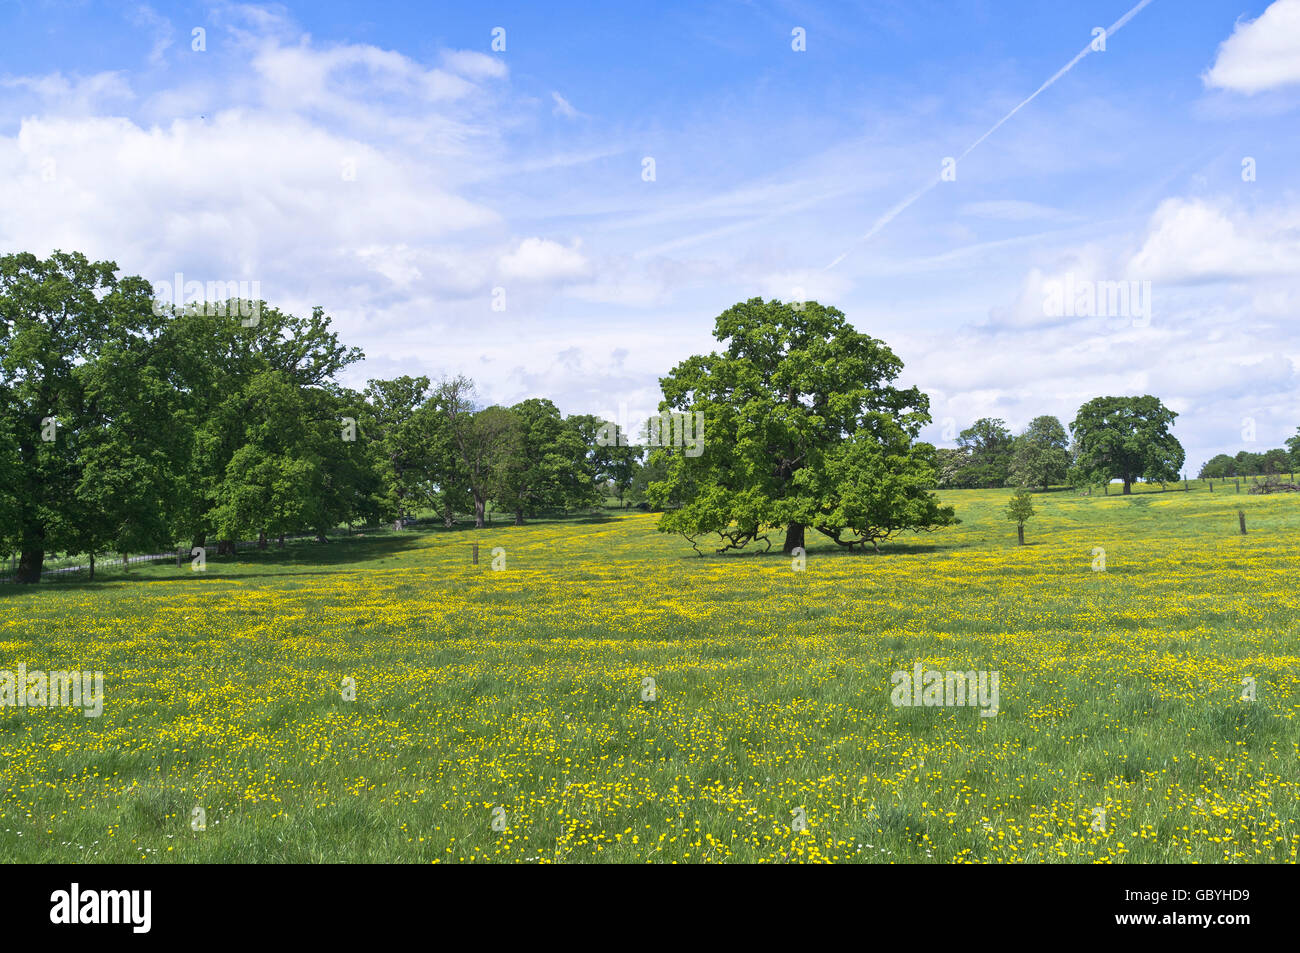 dh COTSWOLDS GLOUCESTERSHIRE Eichen in Butterblume Feld Landschaft Wiese Der Frühling Butterblumen Blume schönen england britischen Landschaftbaum Stockfoto